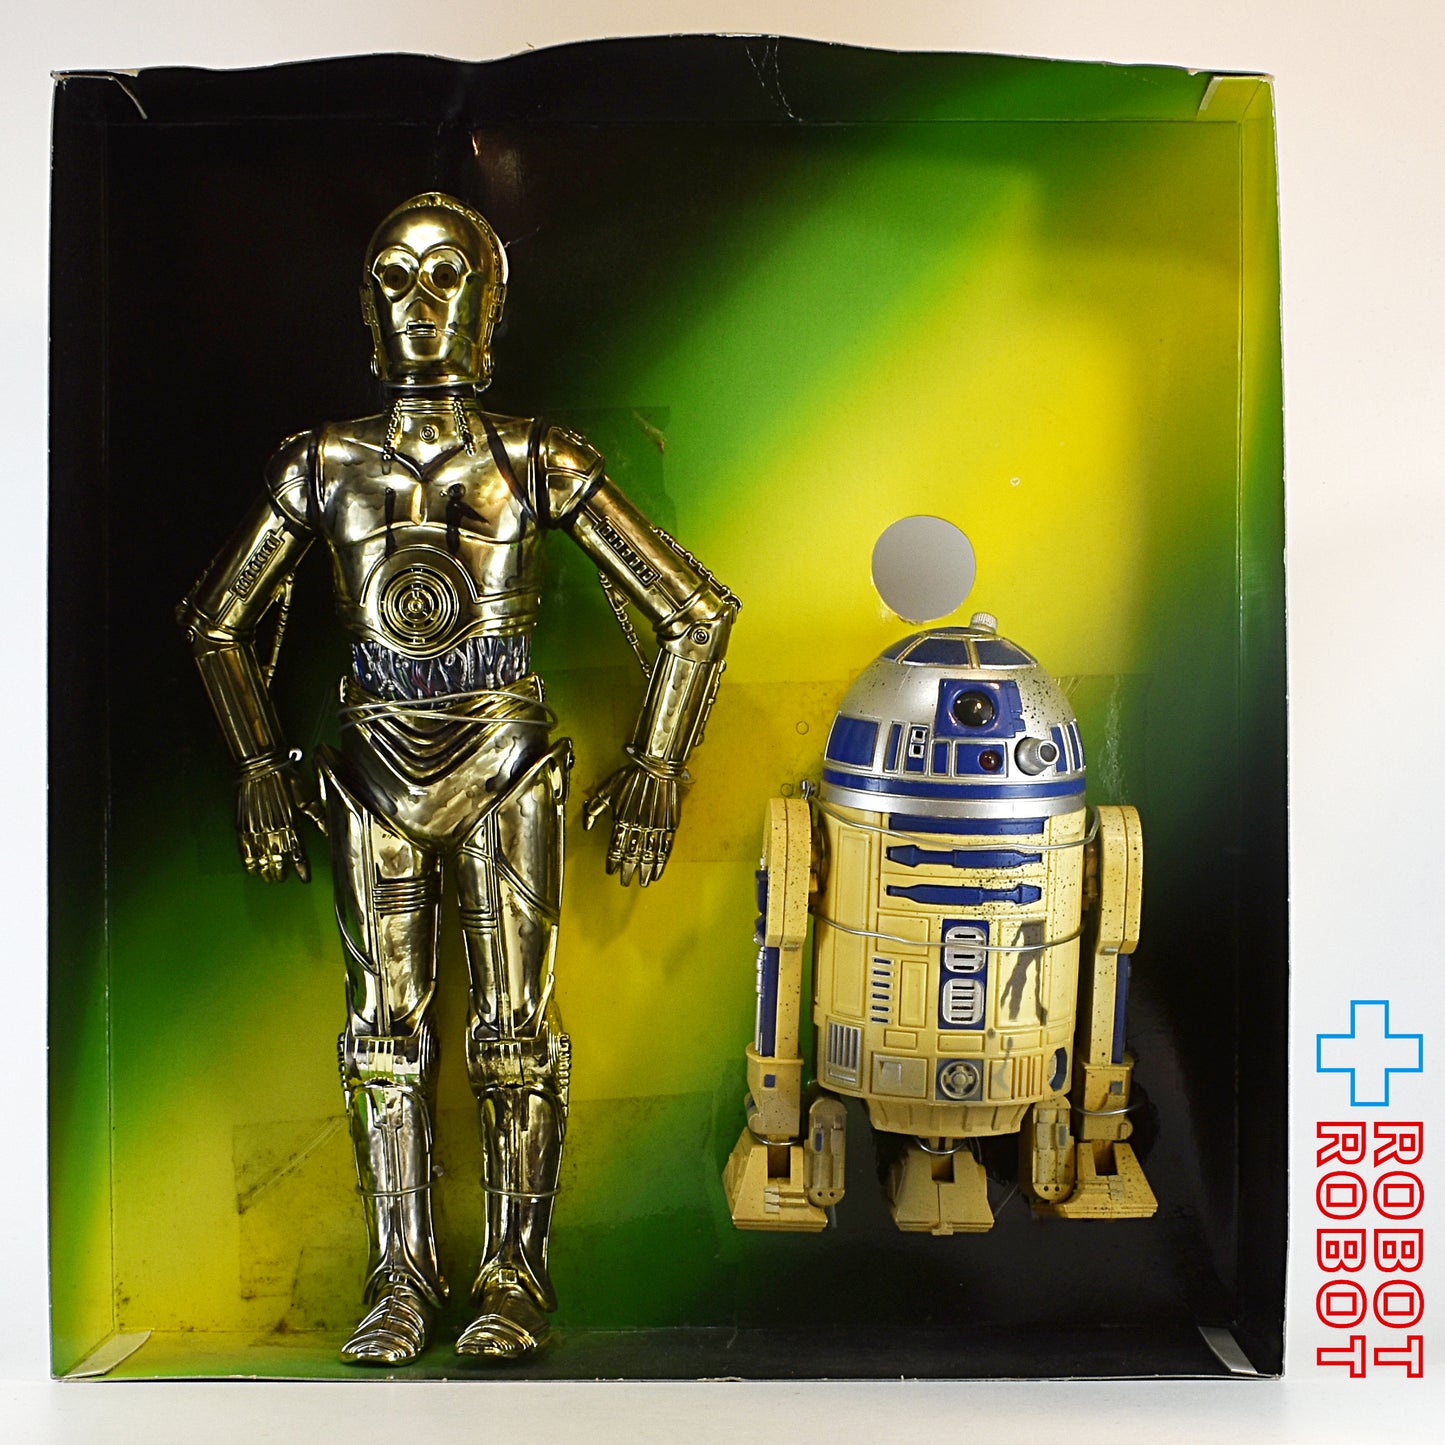 スター・ウォーズ C-3PO & R2-D2 エレクトリック12インチ アクションコレクション フィギュア 箱付